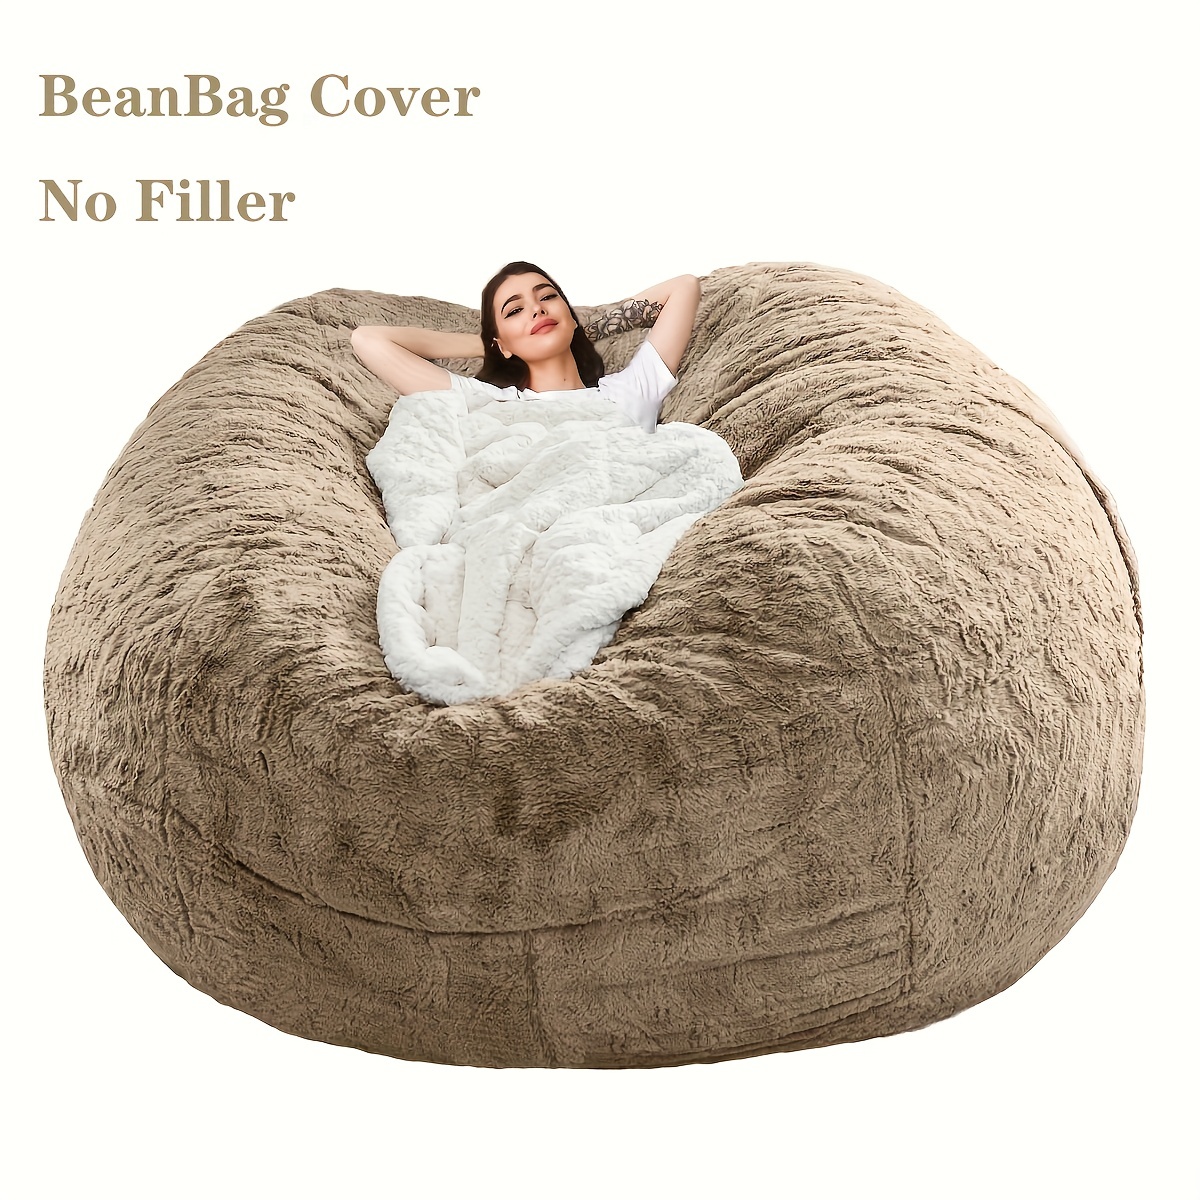 Bean Bag Bed for sale | eBay